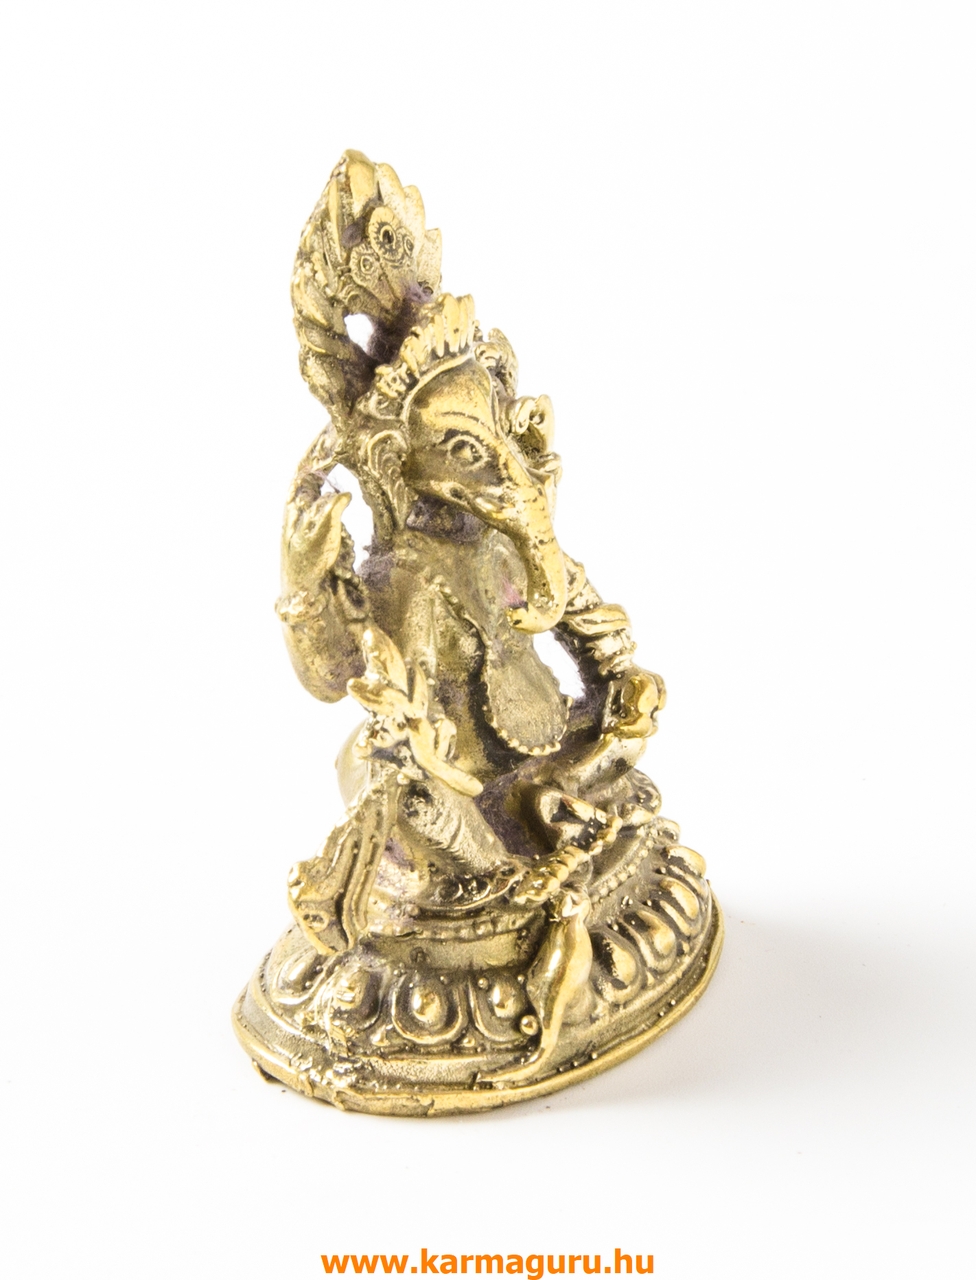 Ganesha réz szobor, matt sárga - 6,5 cm